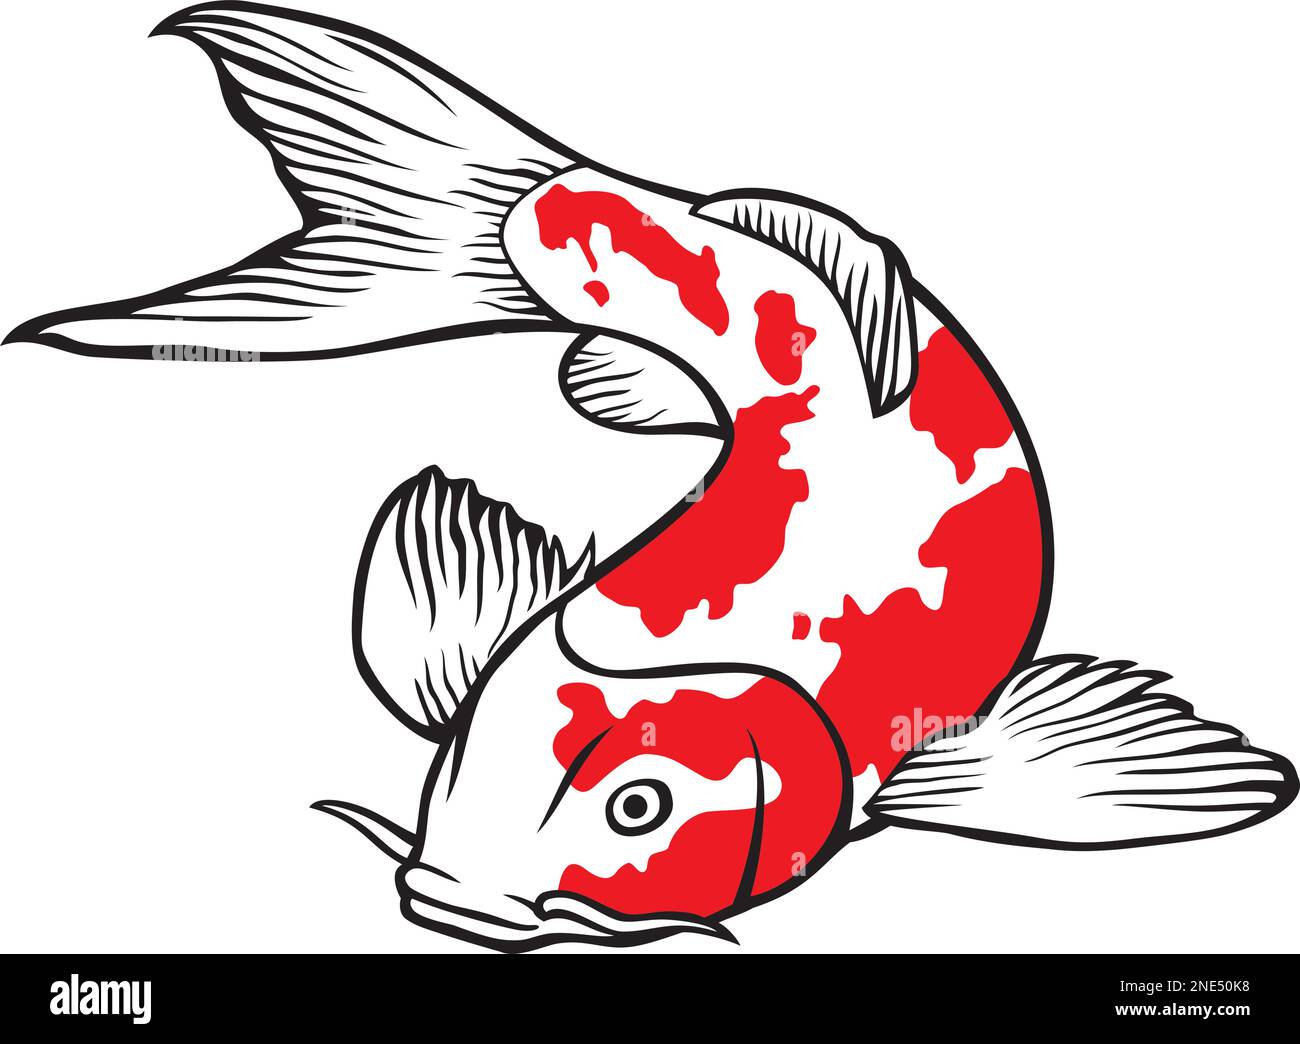 Illustrazione vettoriale di un pesce carpa koi di ispirazione giapponese o cinese Illustrazione Vettoriale